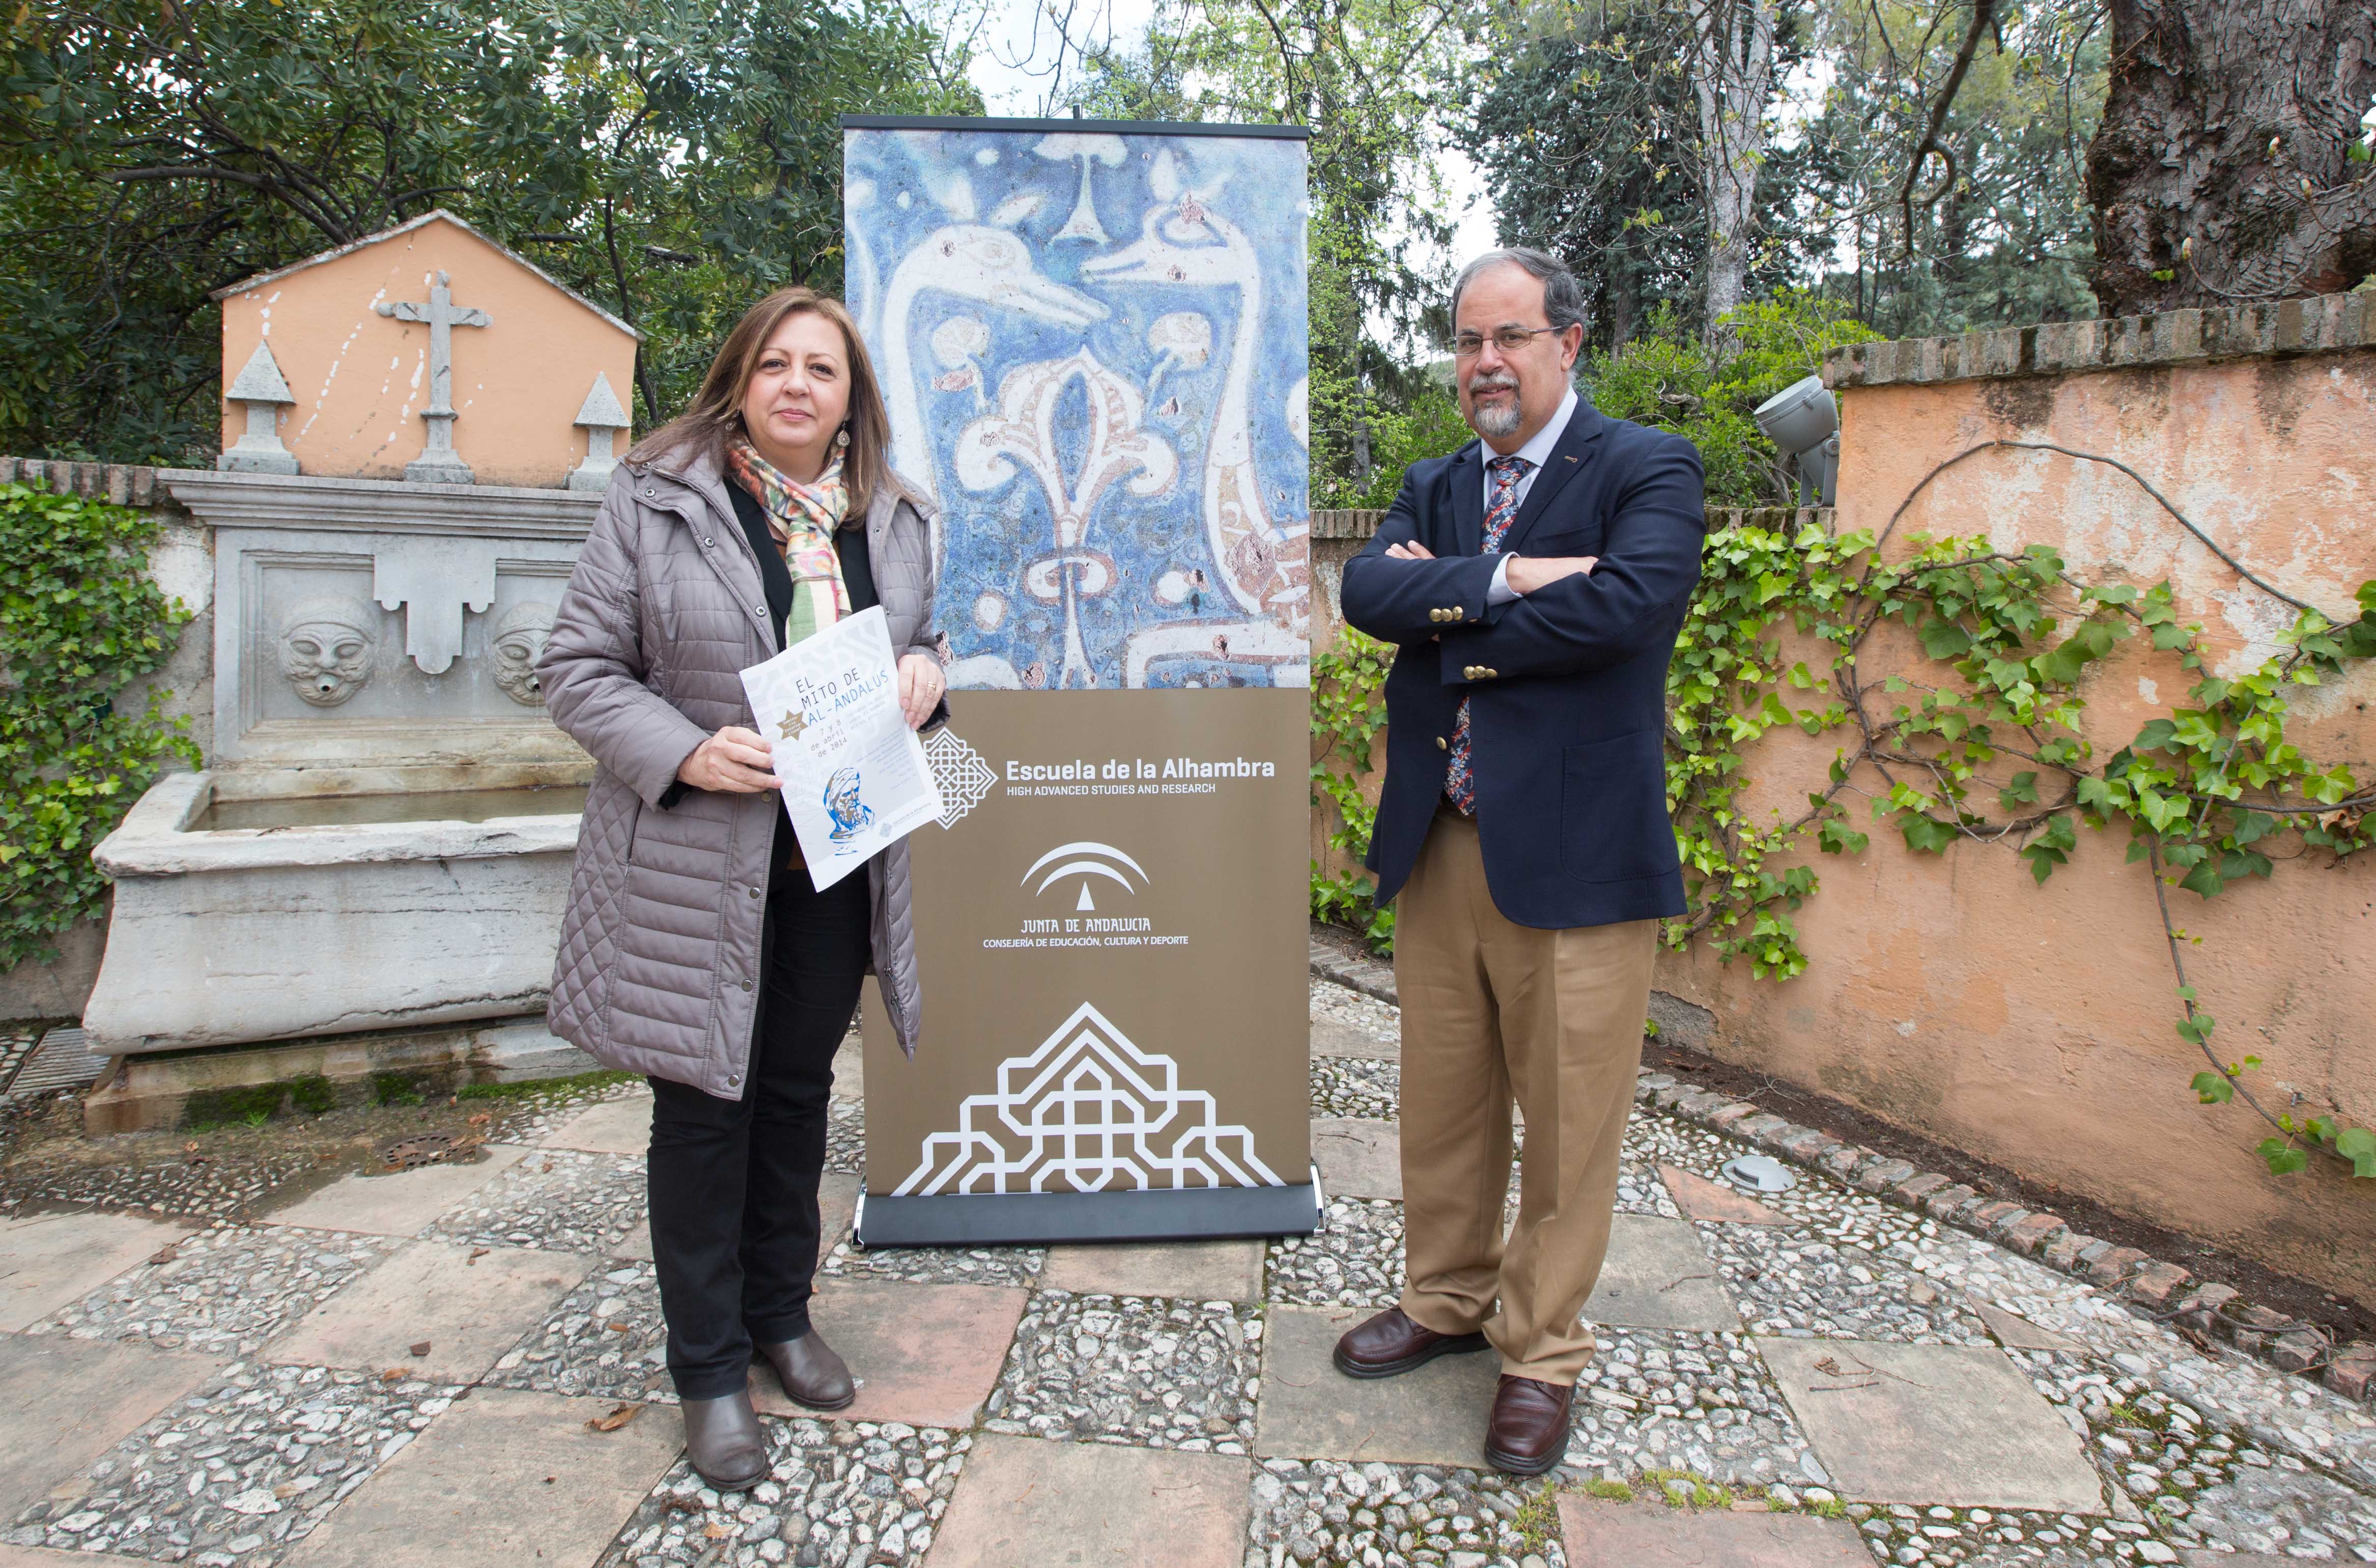 La Escuela de Alhambra comienza su andadura académica con un seminario internacional sobre el Mito de al-Andalus